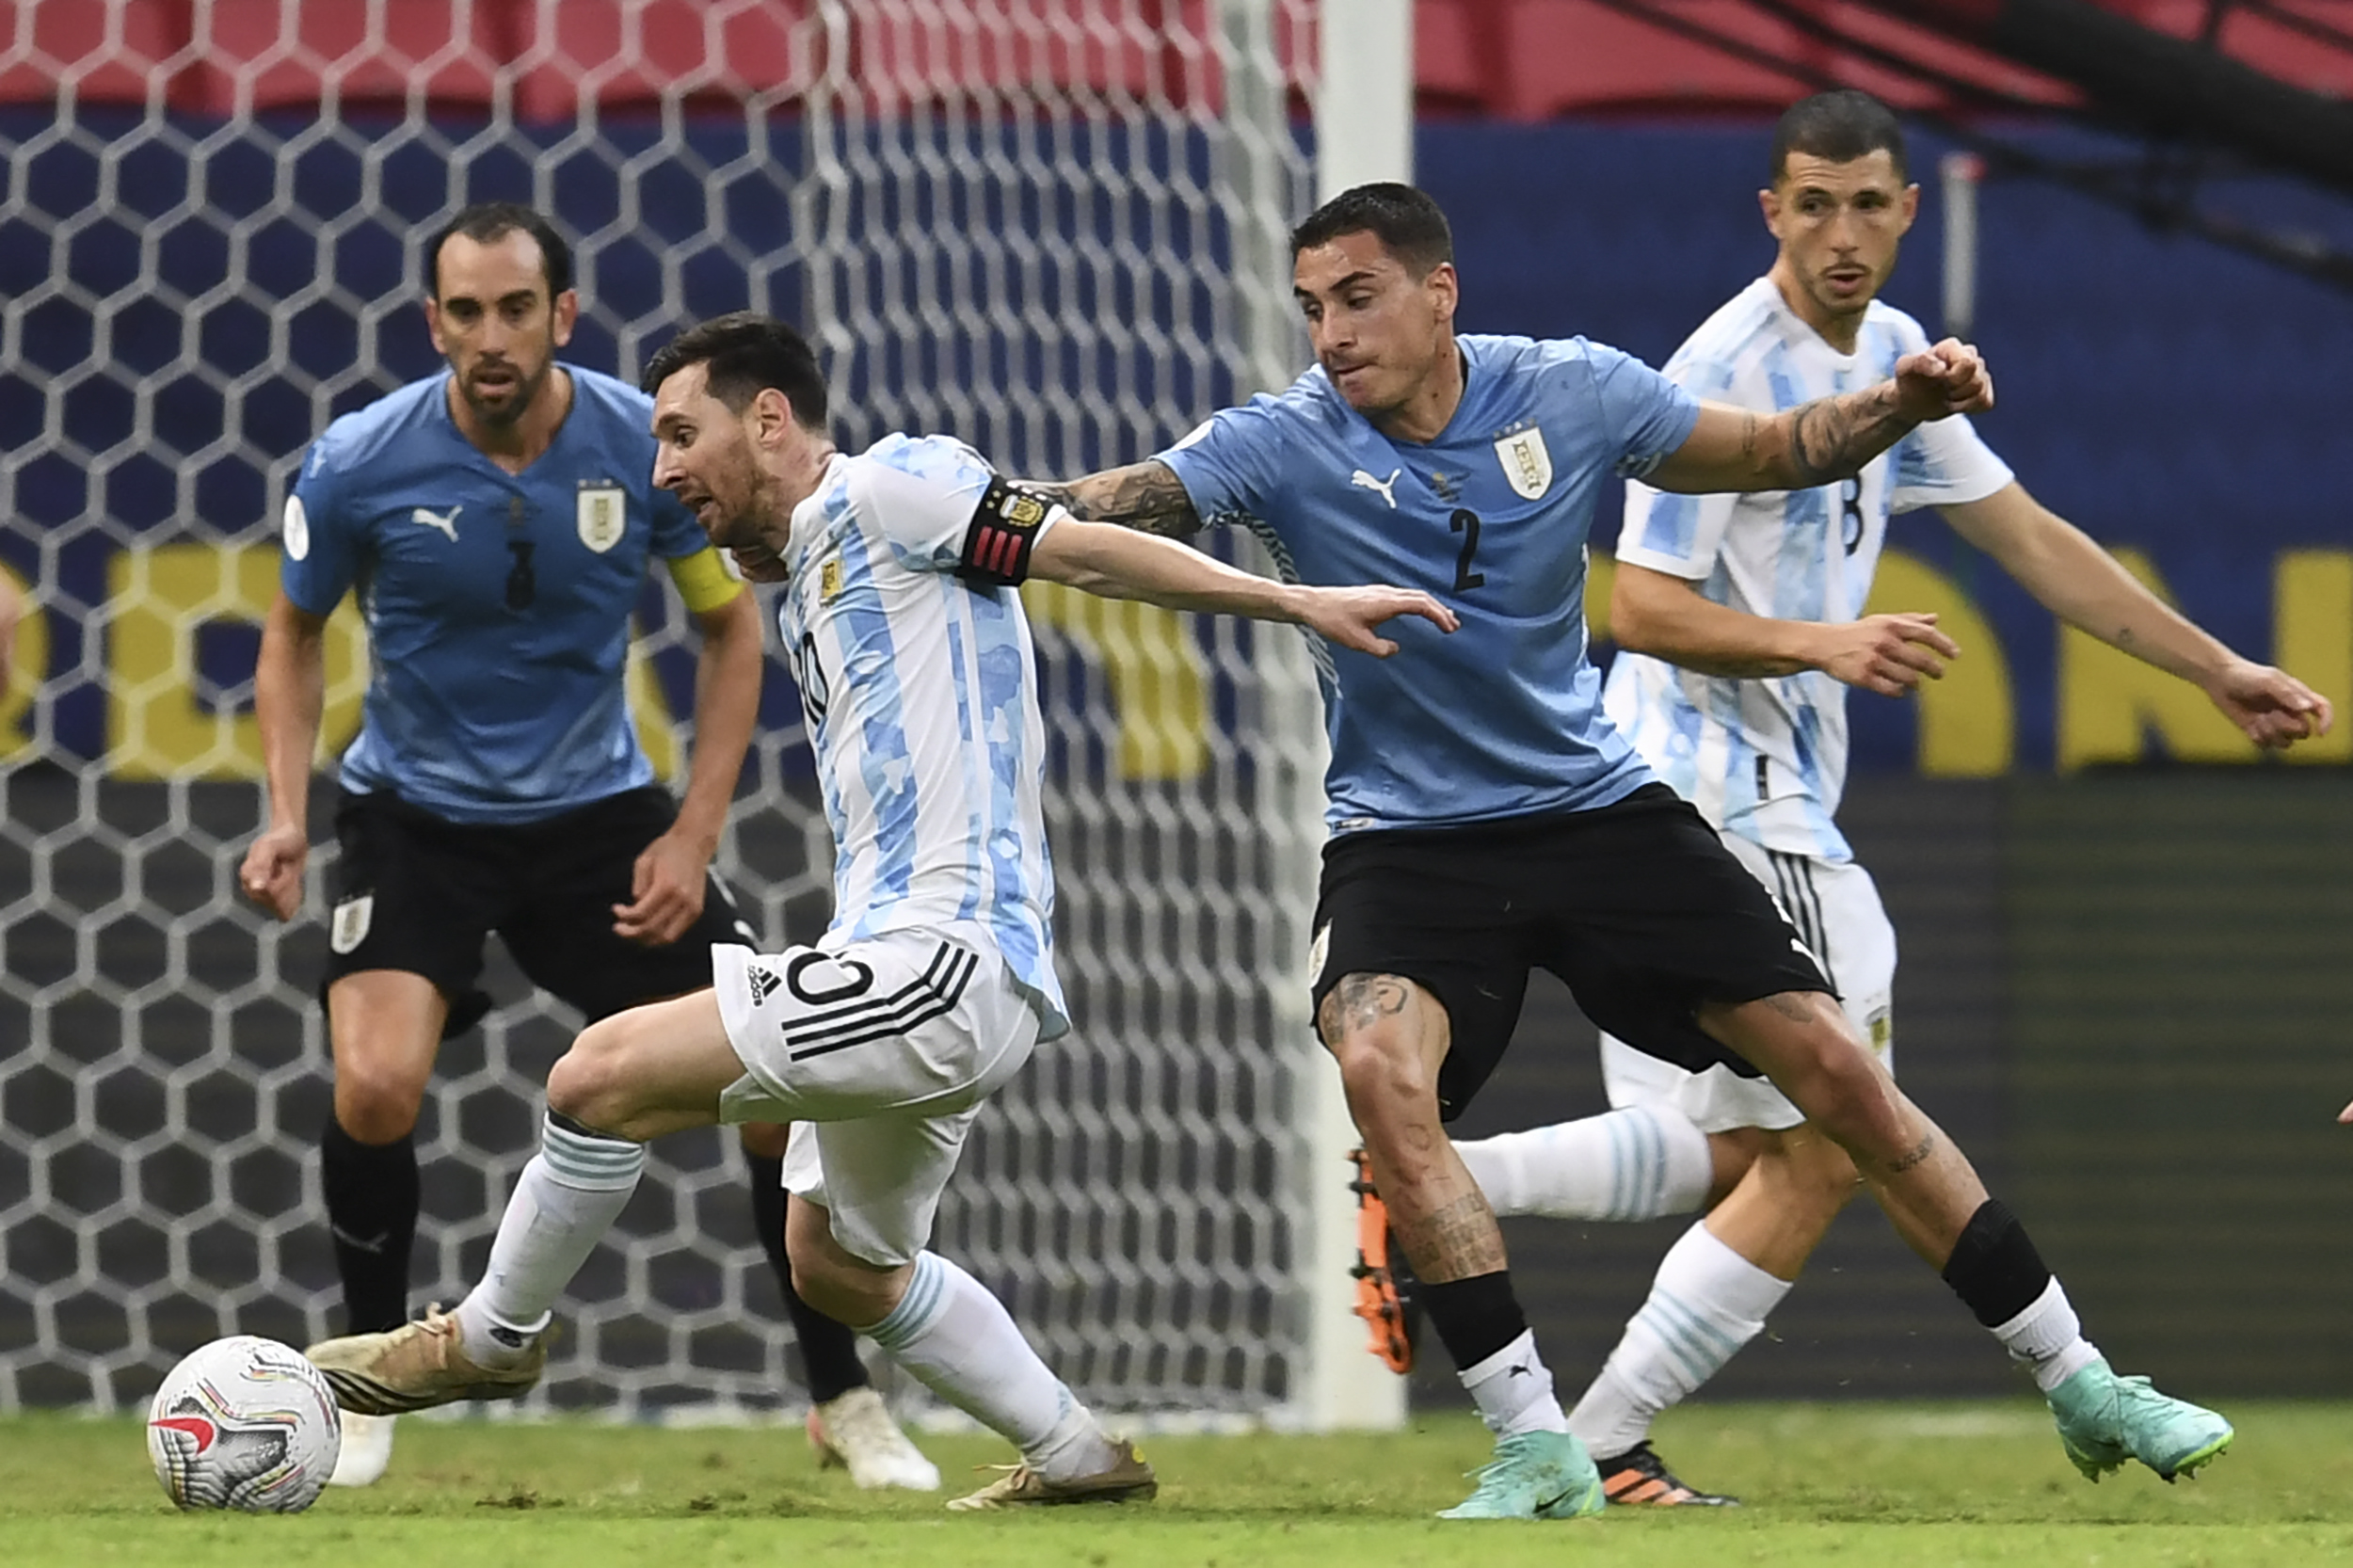 Un fin de semana repleto de fútbol: eliminatorias sudamericanas, europeas y el torneo local